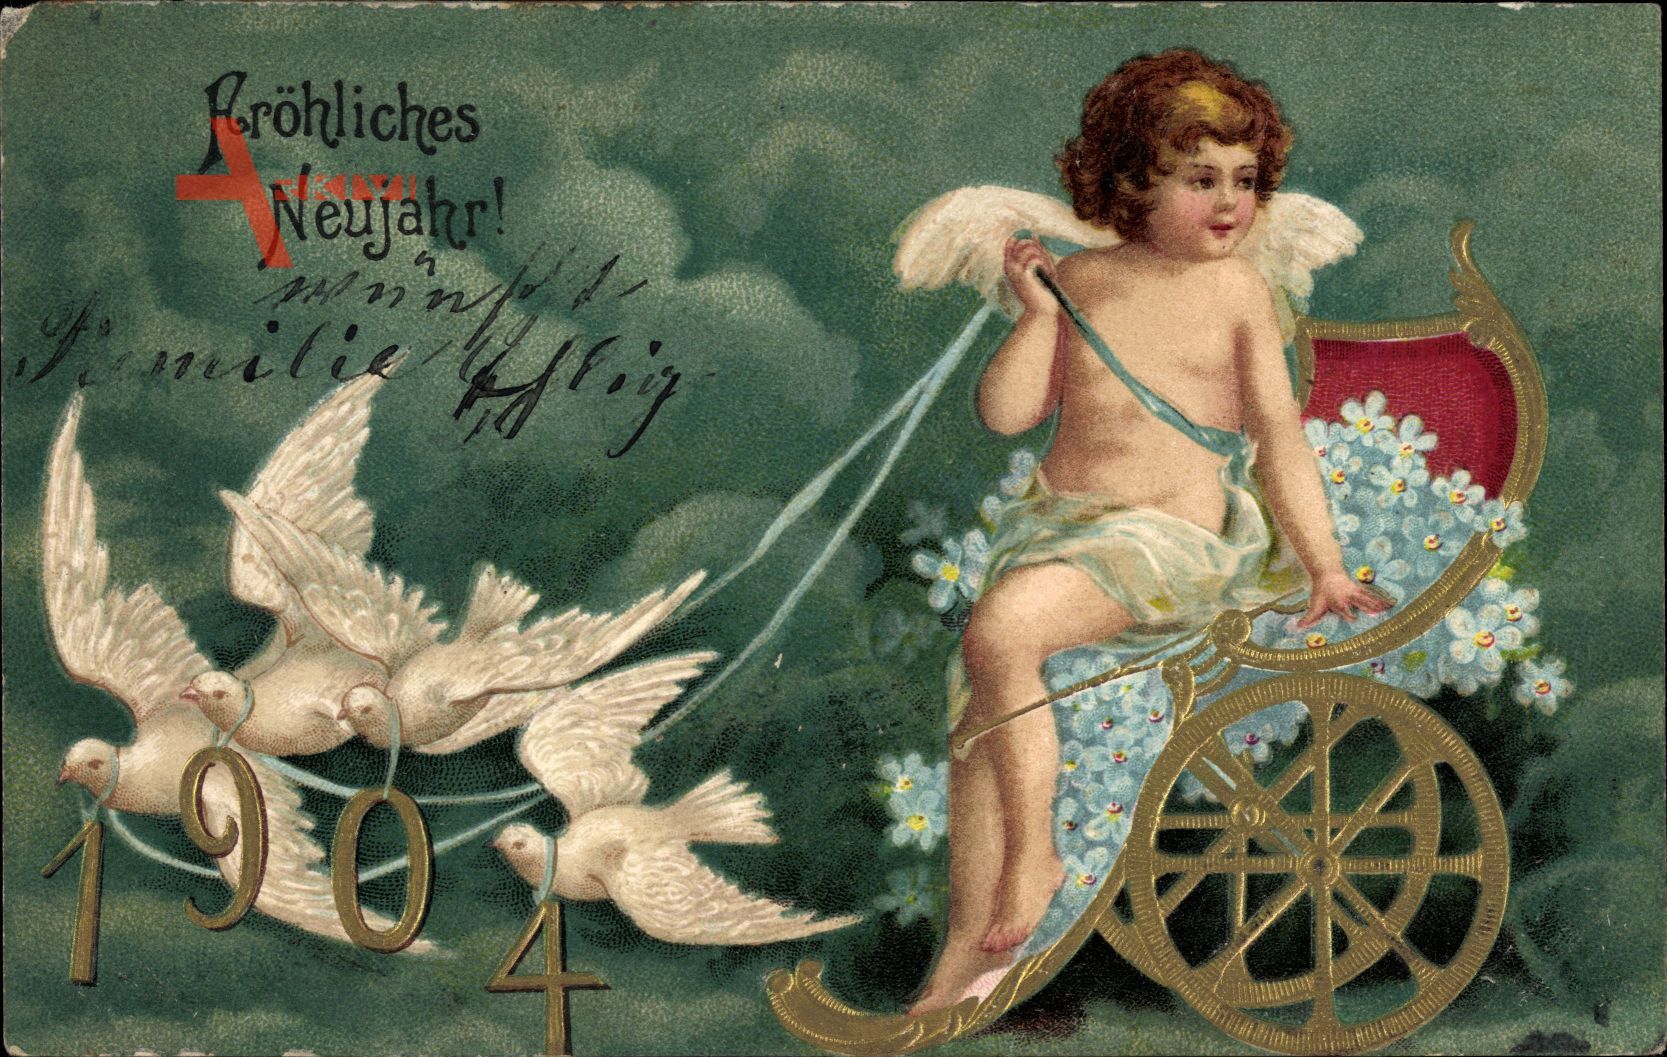 Glückwunsch Neujahr, Engel, Kutsche, Jahreszahl 1904, Tauben